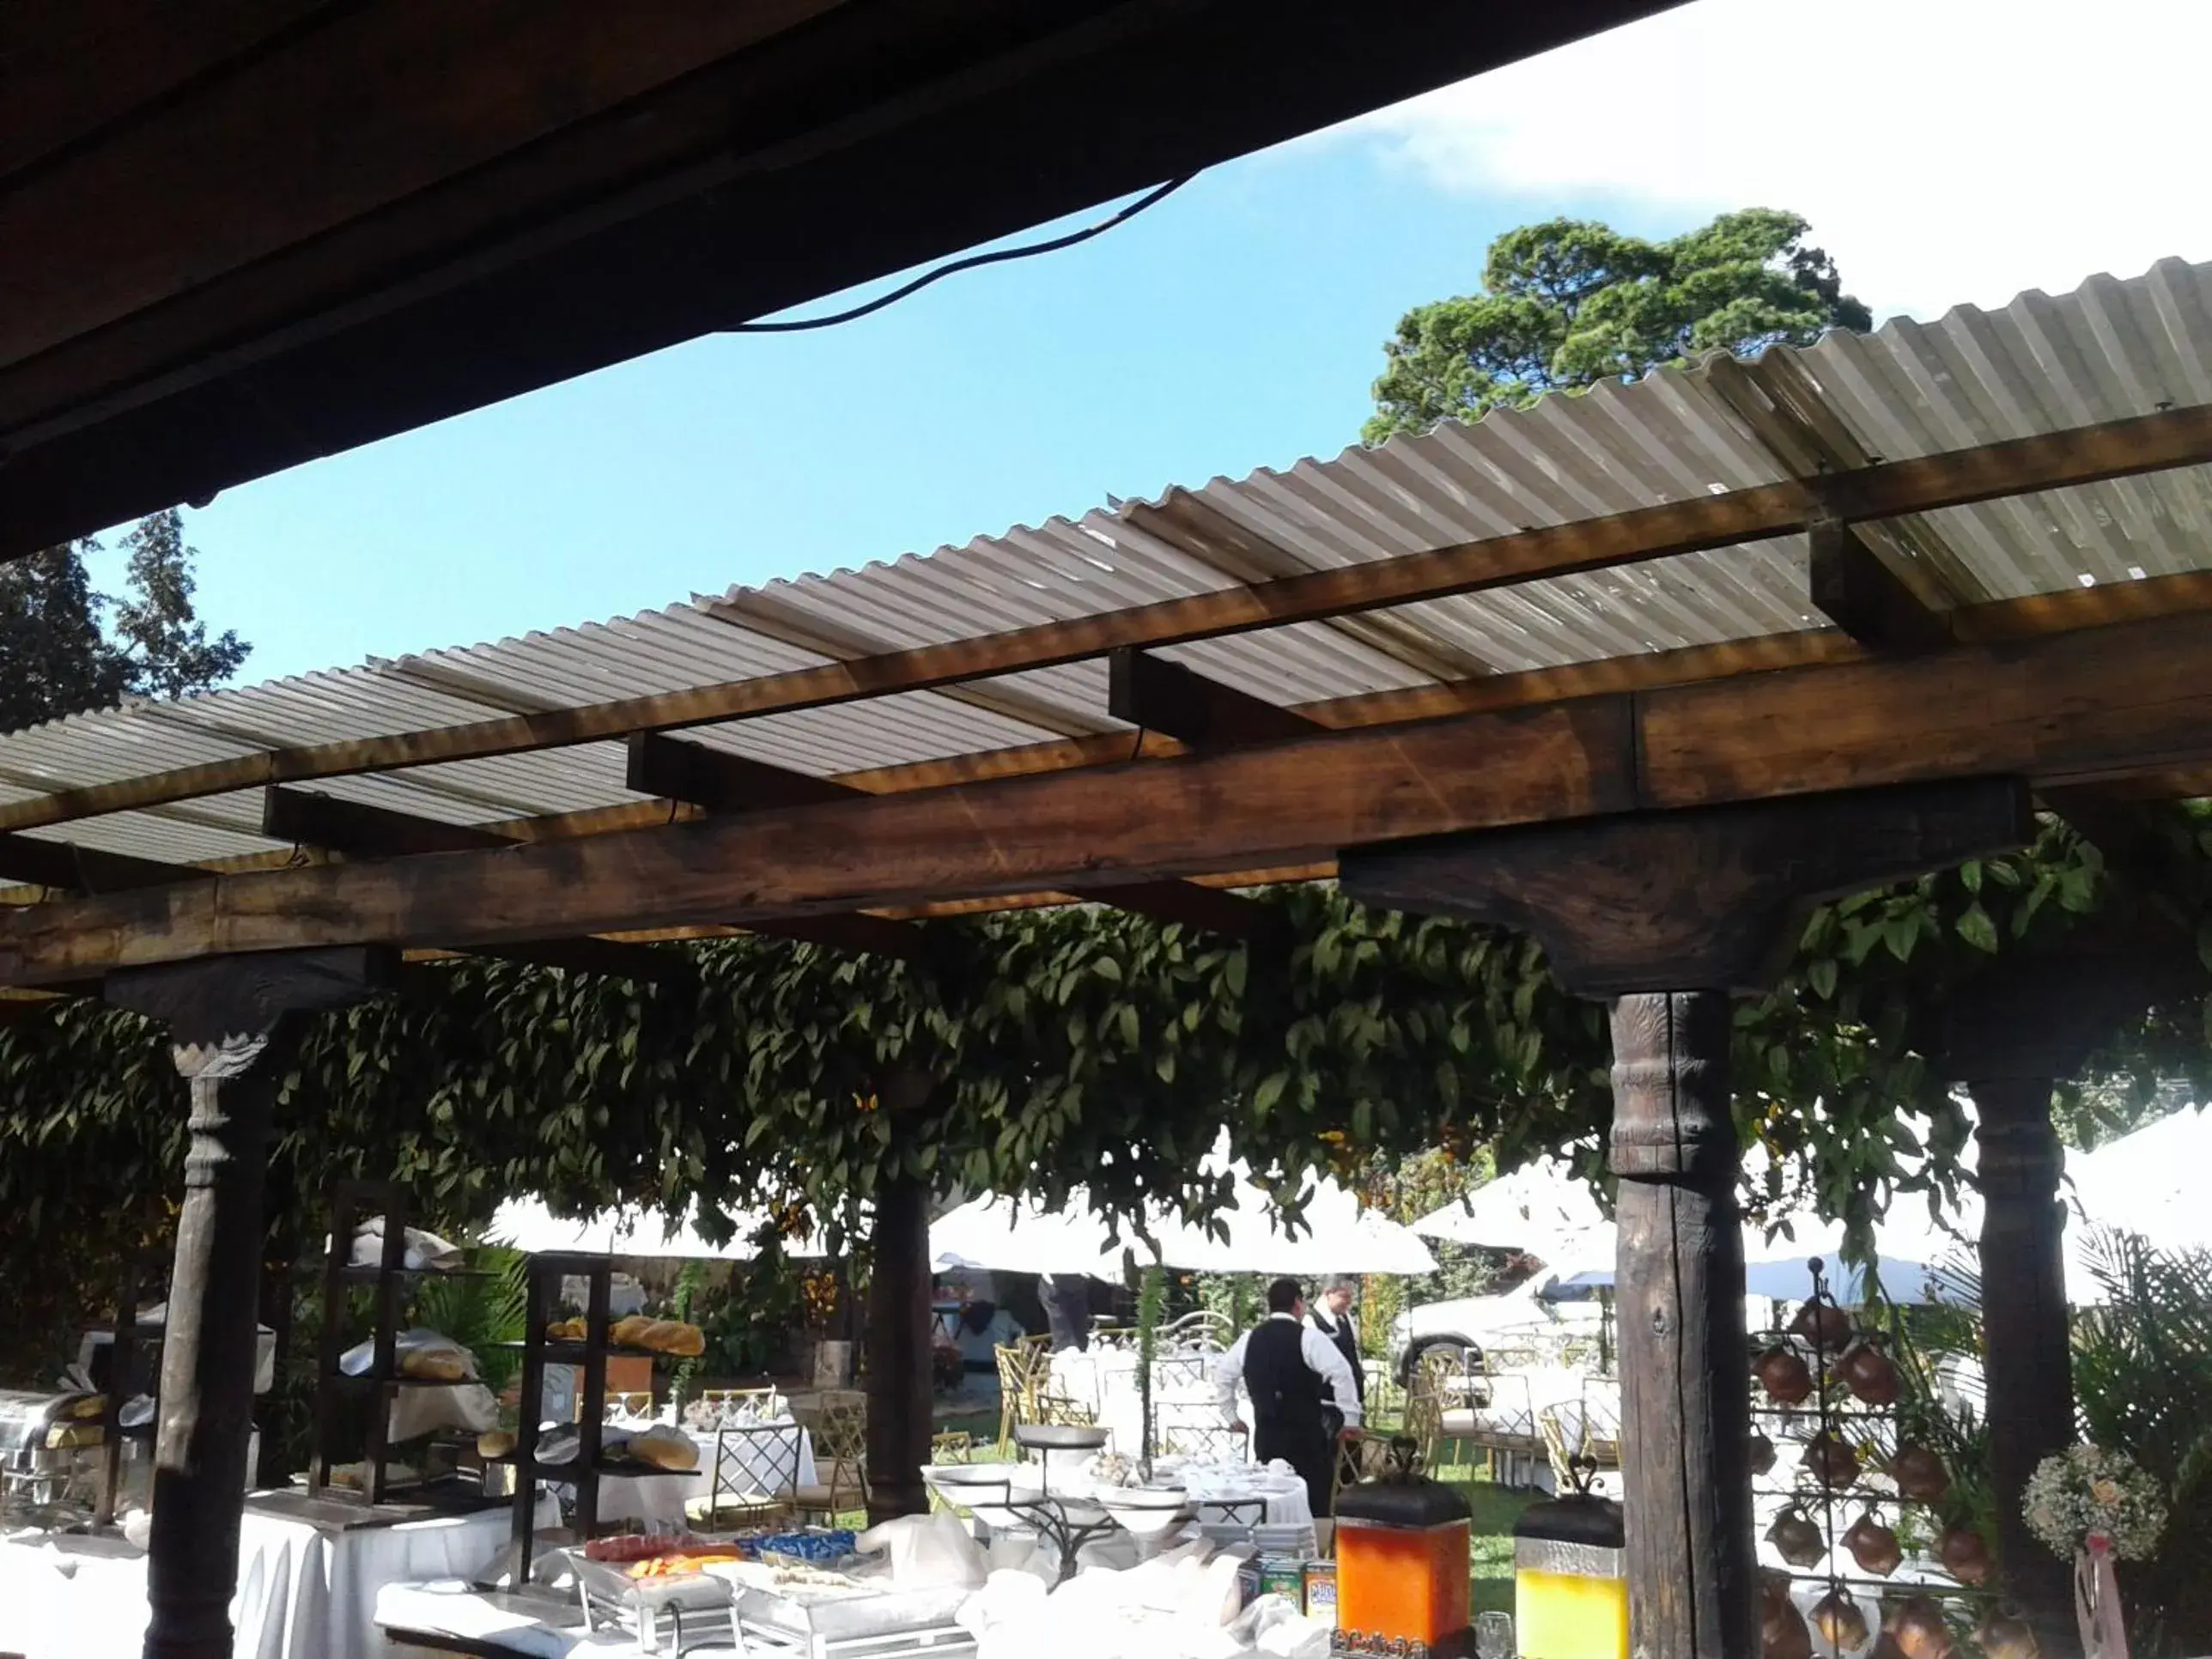 Banquet/Function facilities, Patio/Outdoor Area in Casa Santa Rosa Hotel Boutique